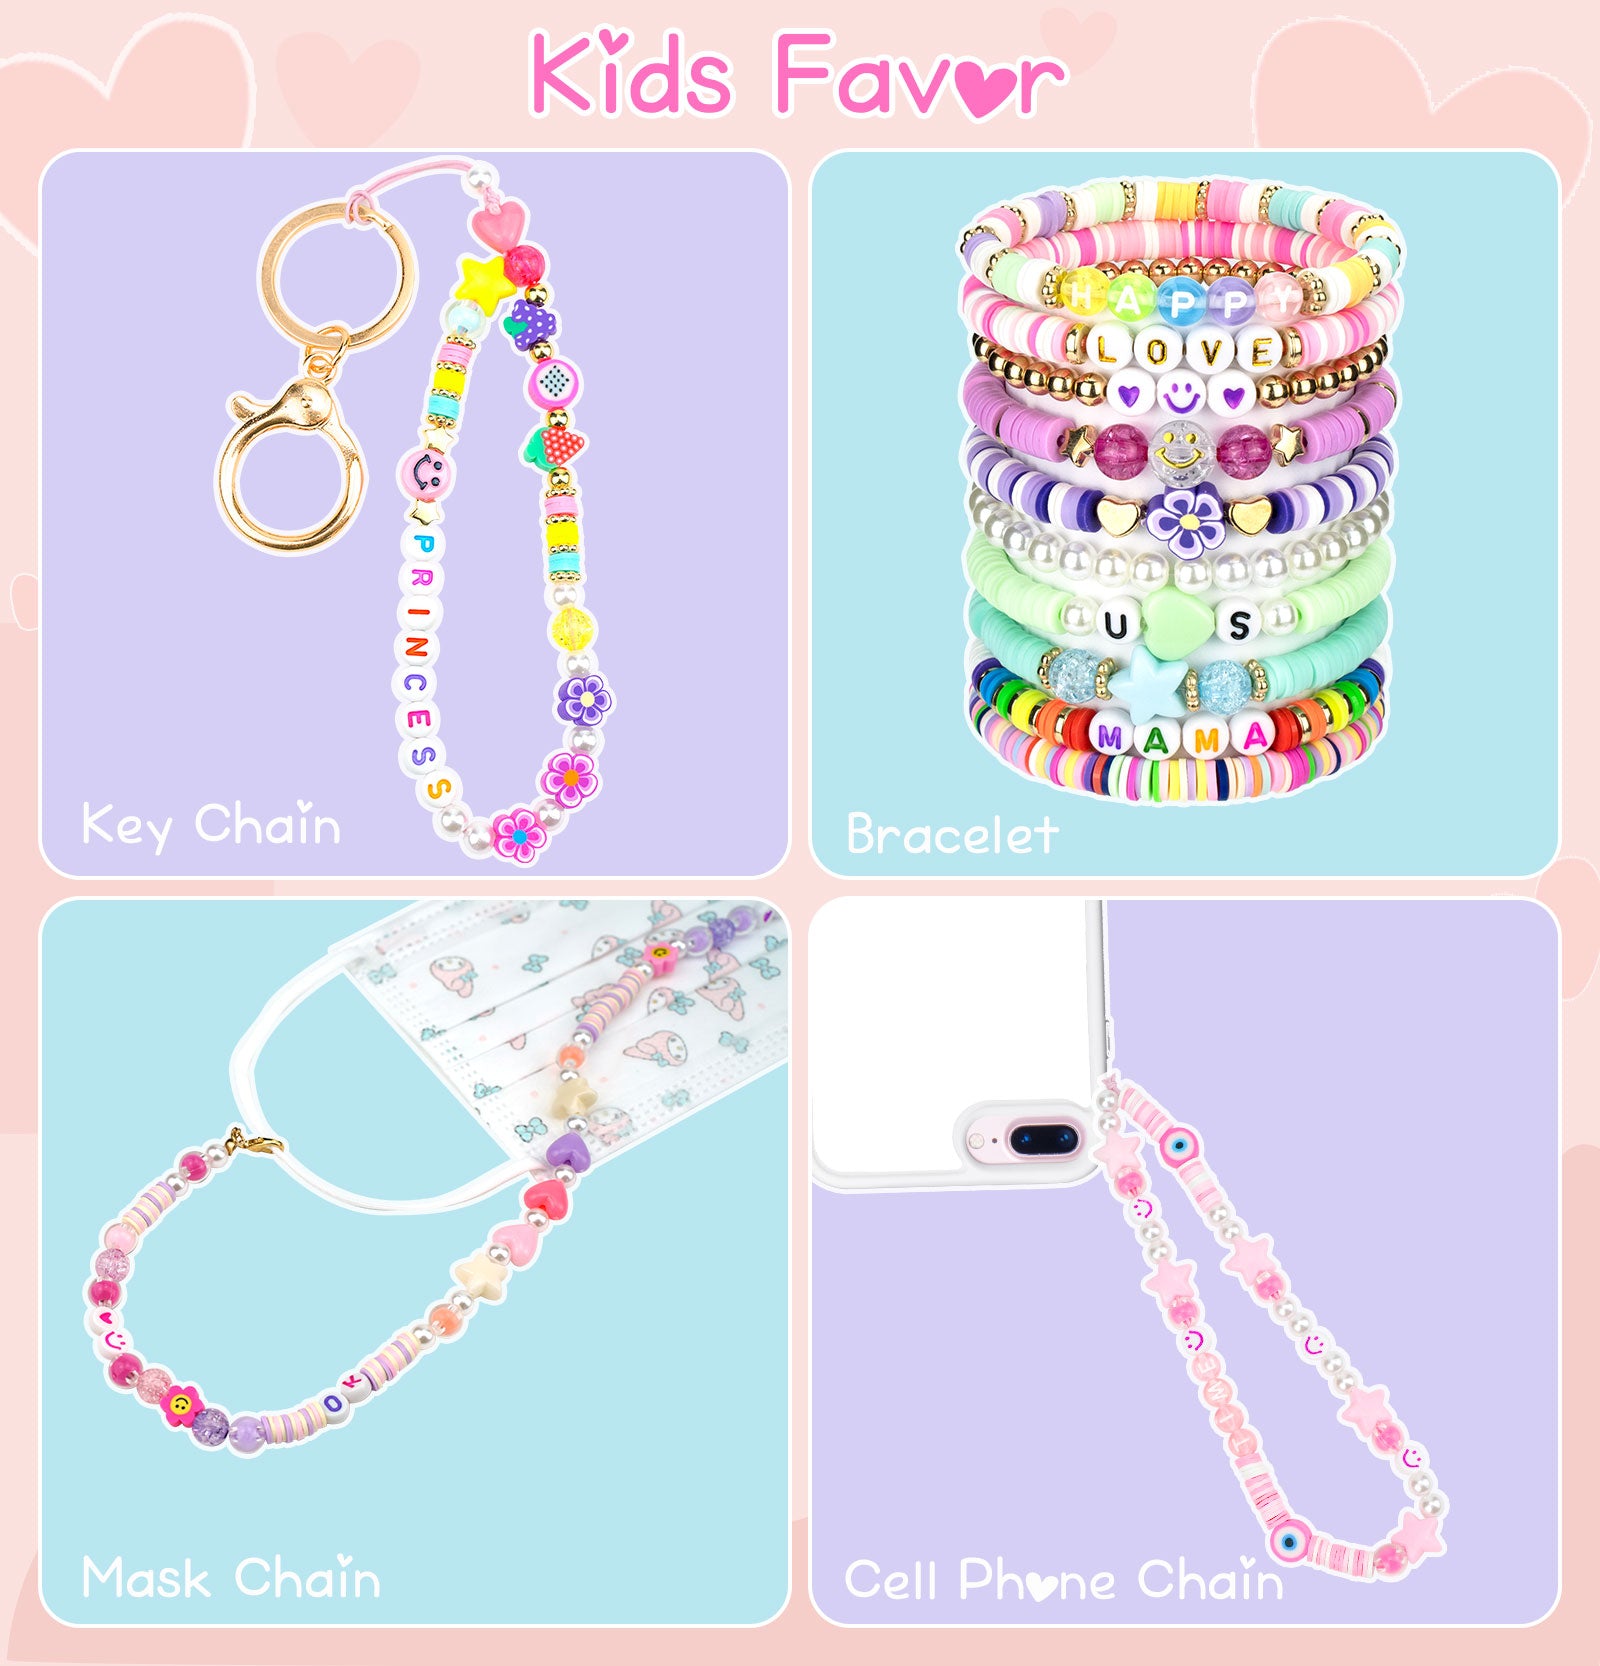  Friendship Bracelet Making Kit for Girls, Arts and